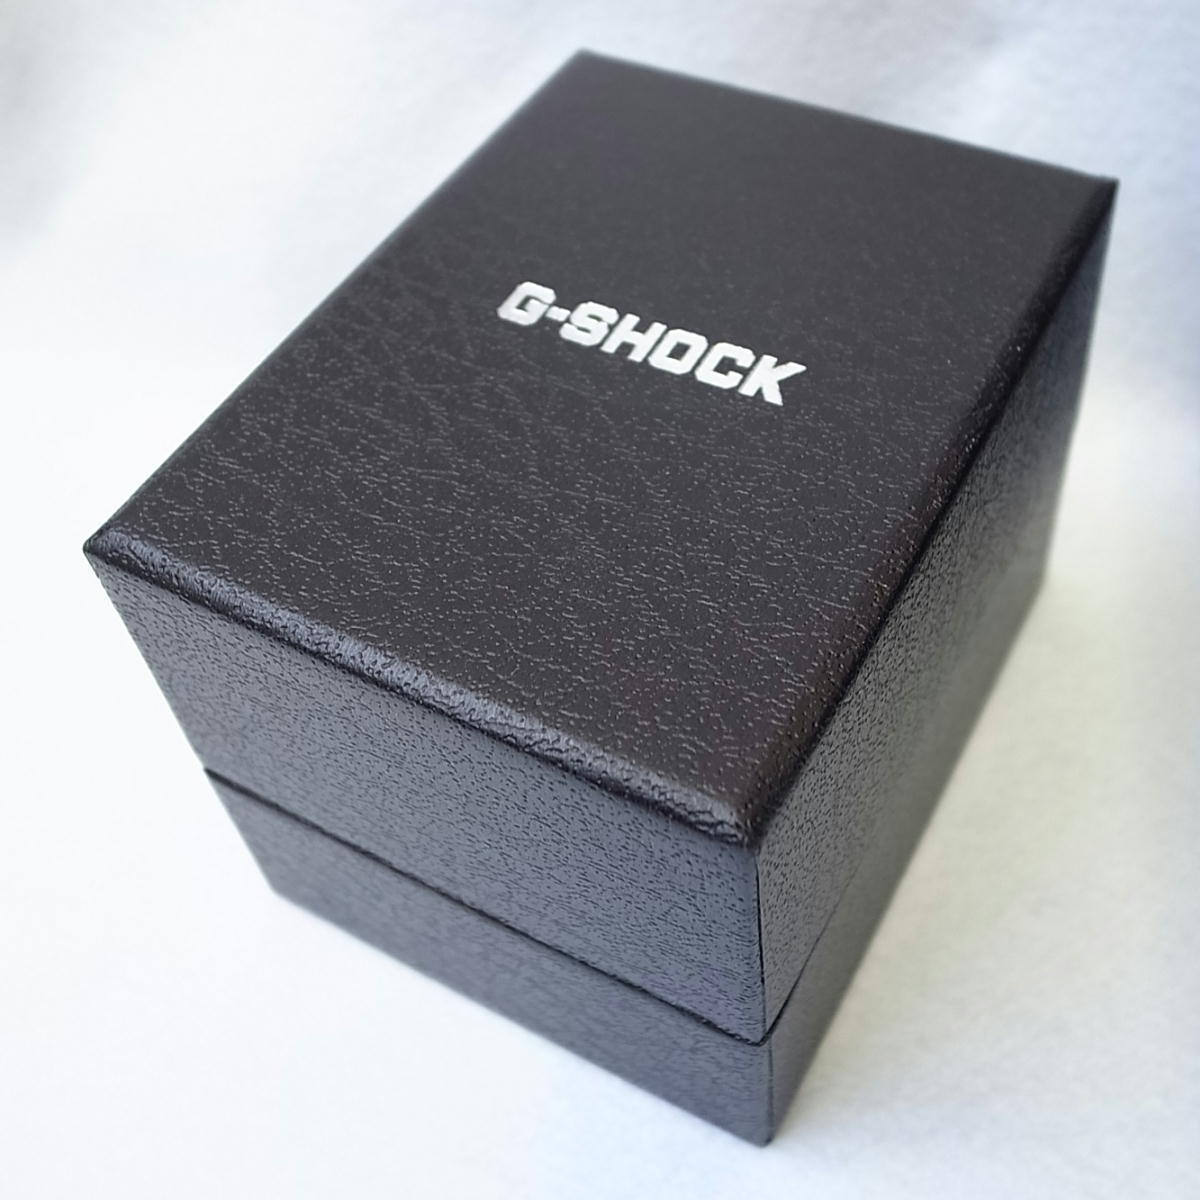 【外箱、付属品有】空箱のみ CASIO G-SHOCK カシオ ジーショック 腕時計用空箱 黒色 ブラック 外箱 梱包 備品 (C-PMGH2-1) 新品取り出し品_画像4